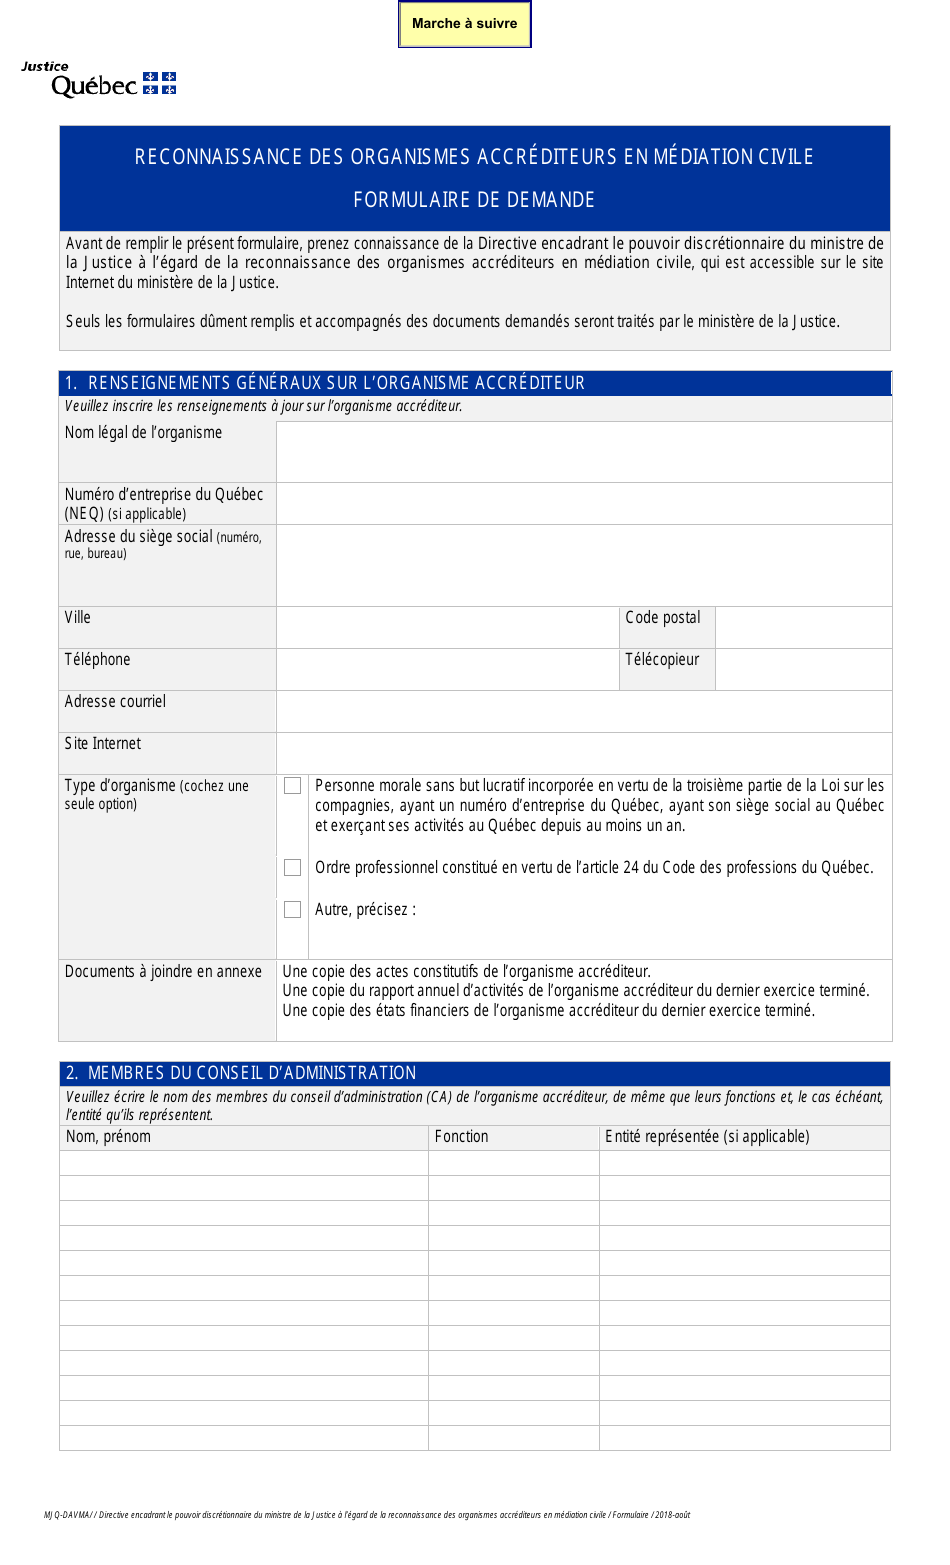 Reconnaissance DES Organismes Accrediteurs En Mediation Civile Formulaire De Demande - Quebec, Canada (French), Page 1